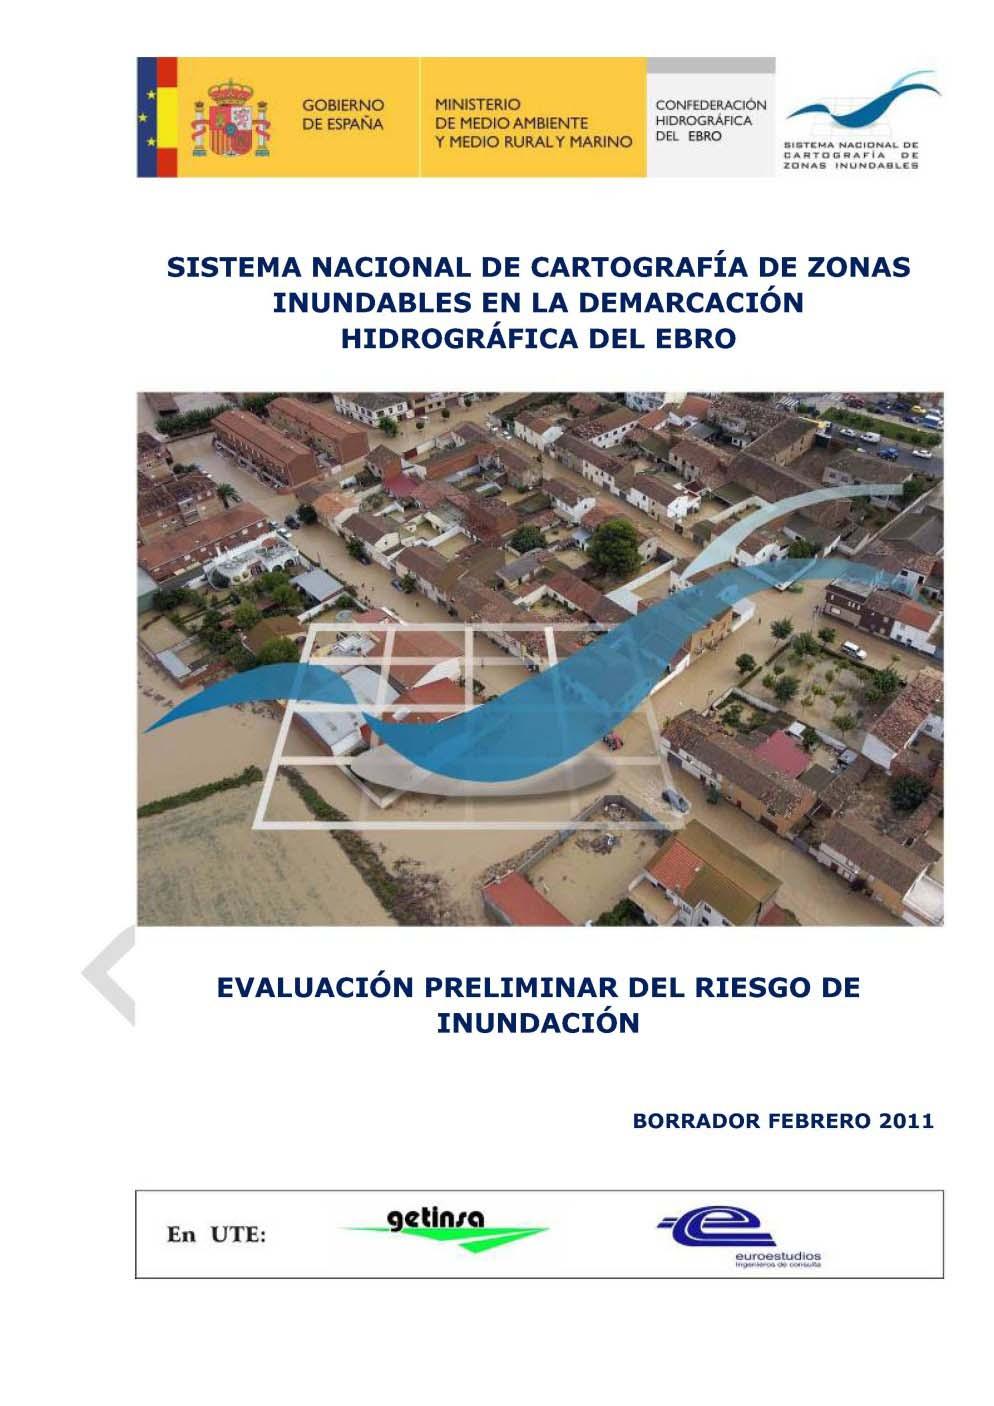 EPRI: RESULTADOS Entrega del borrador de la Evaluación Preliminar del Riesgo de Inundación a las Comunidades Autónomas Próximos pasos: Incorporación de las propuestas de las CCAA (finales de marzo)